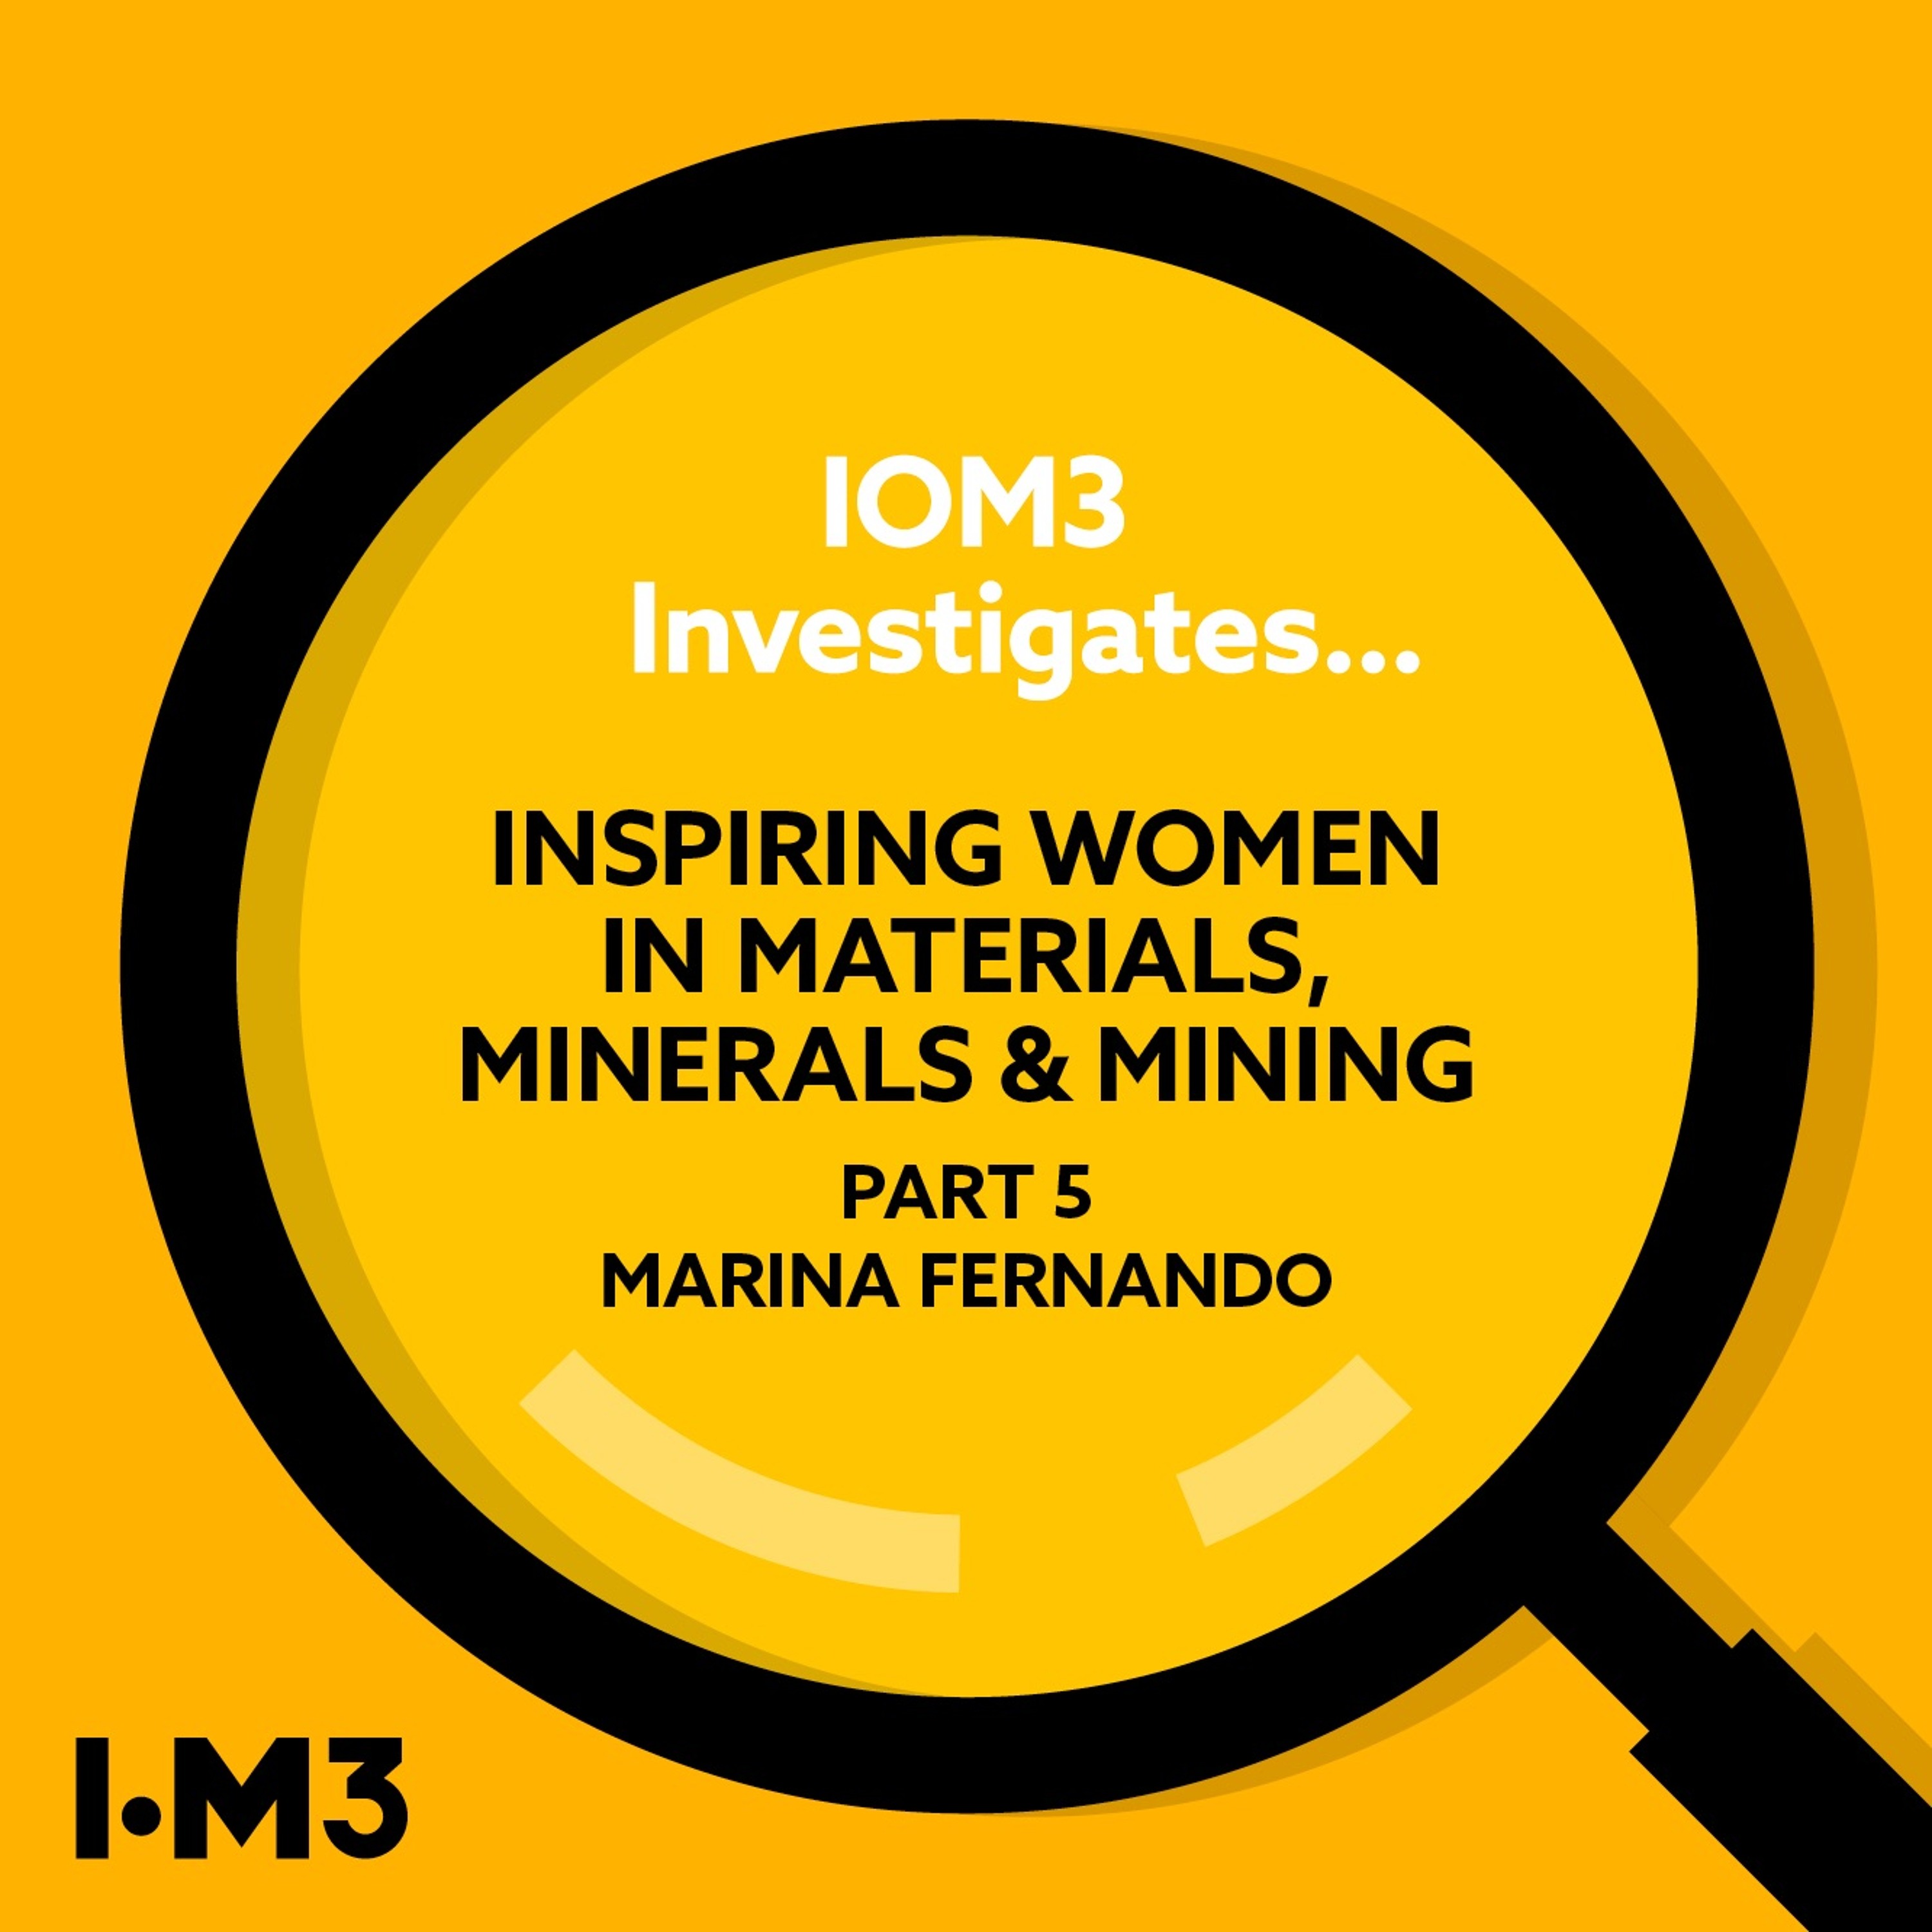 IOM3 Investigates... Inspiring Women in Materials, Minerals and Mining: Marina Fernando